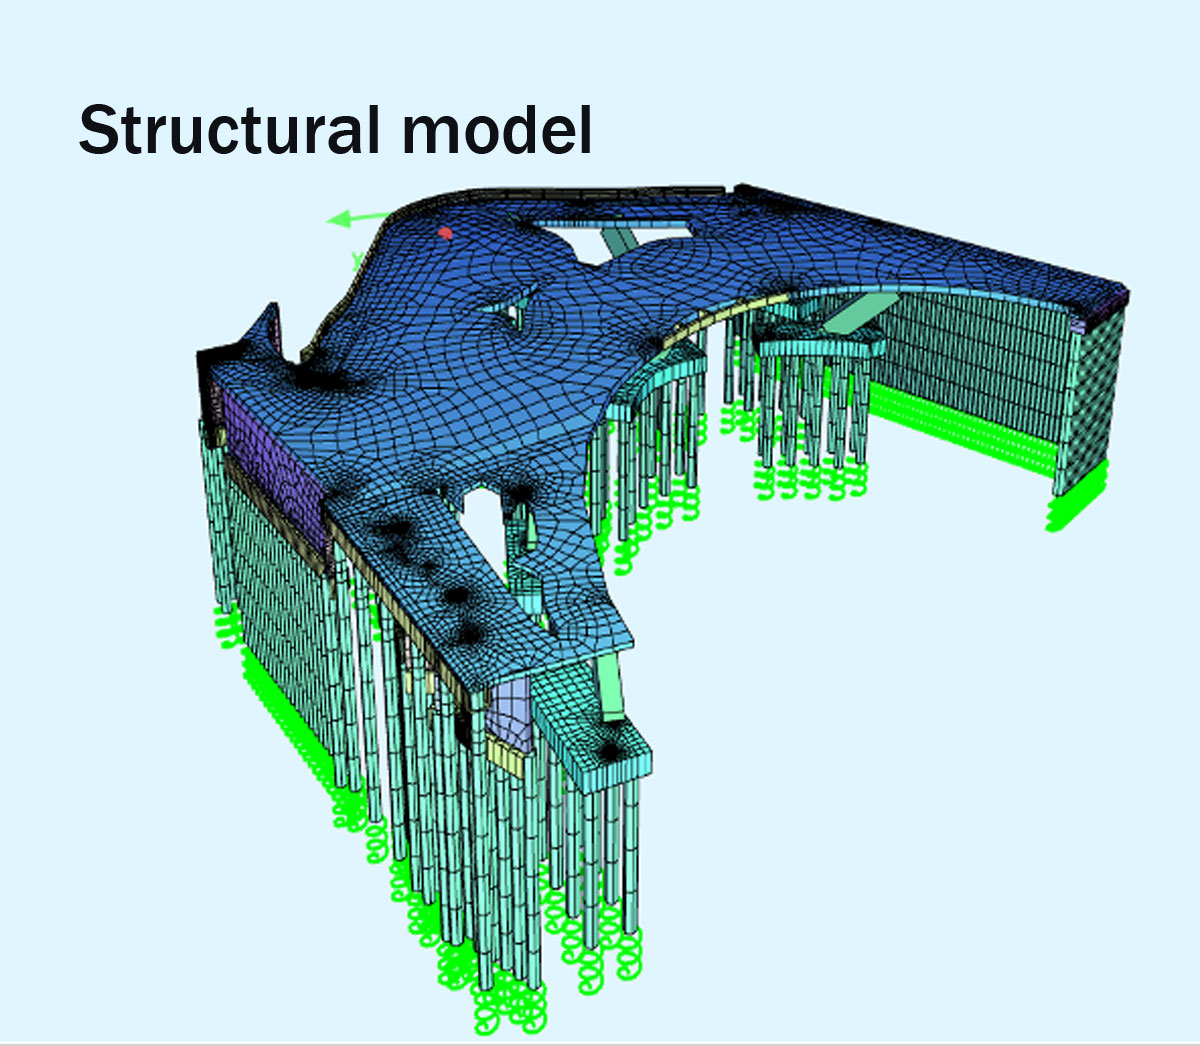 Nicosia square bridge sructural model